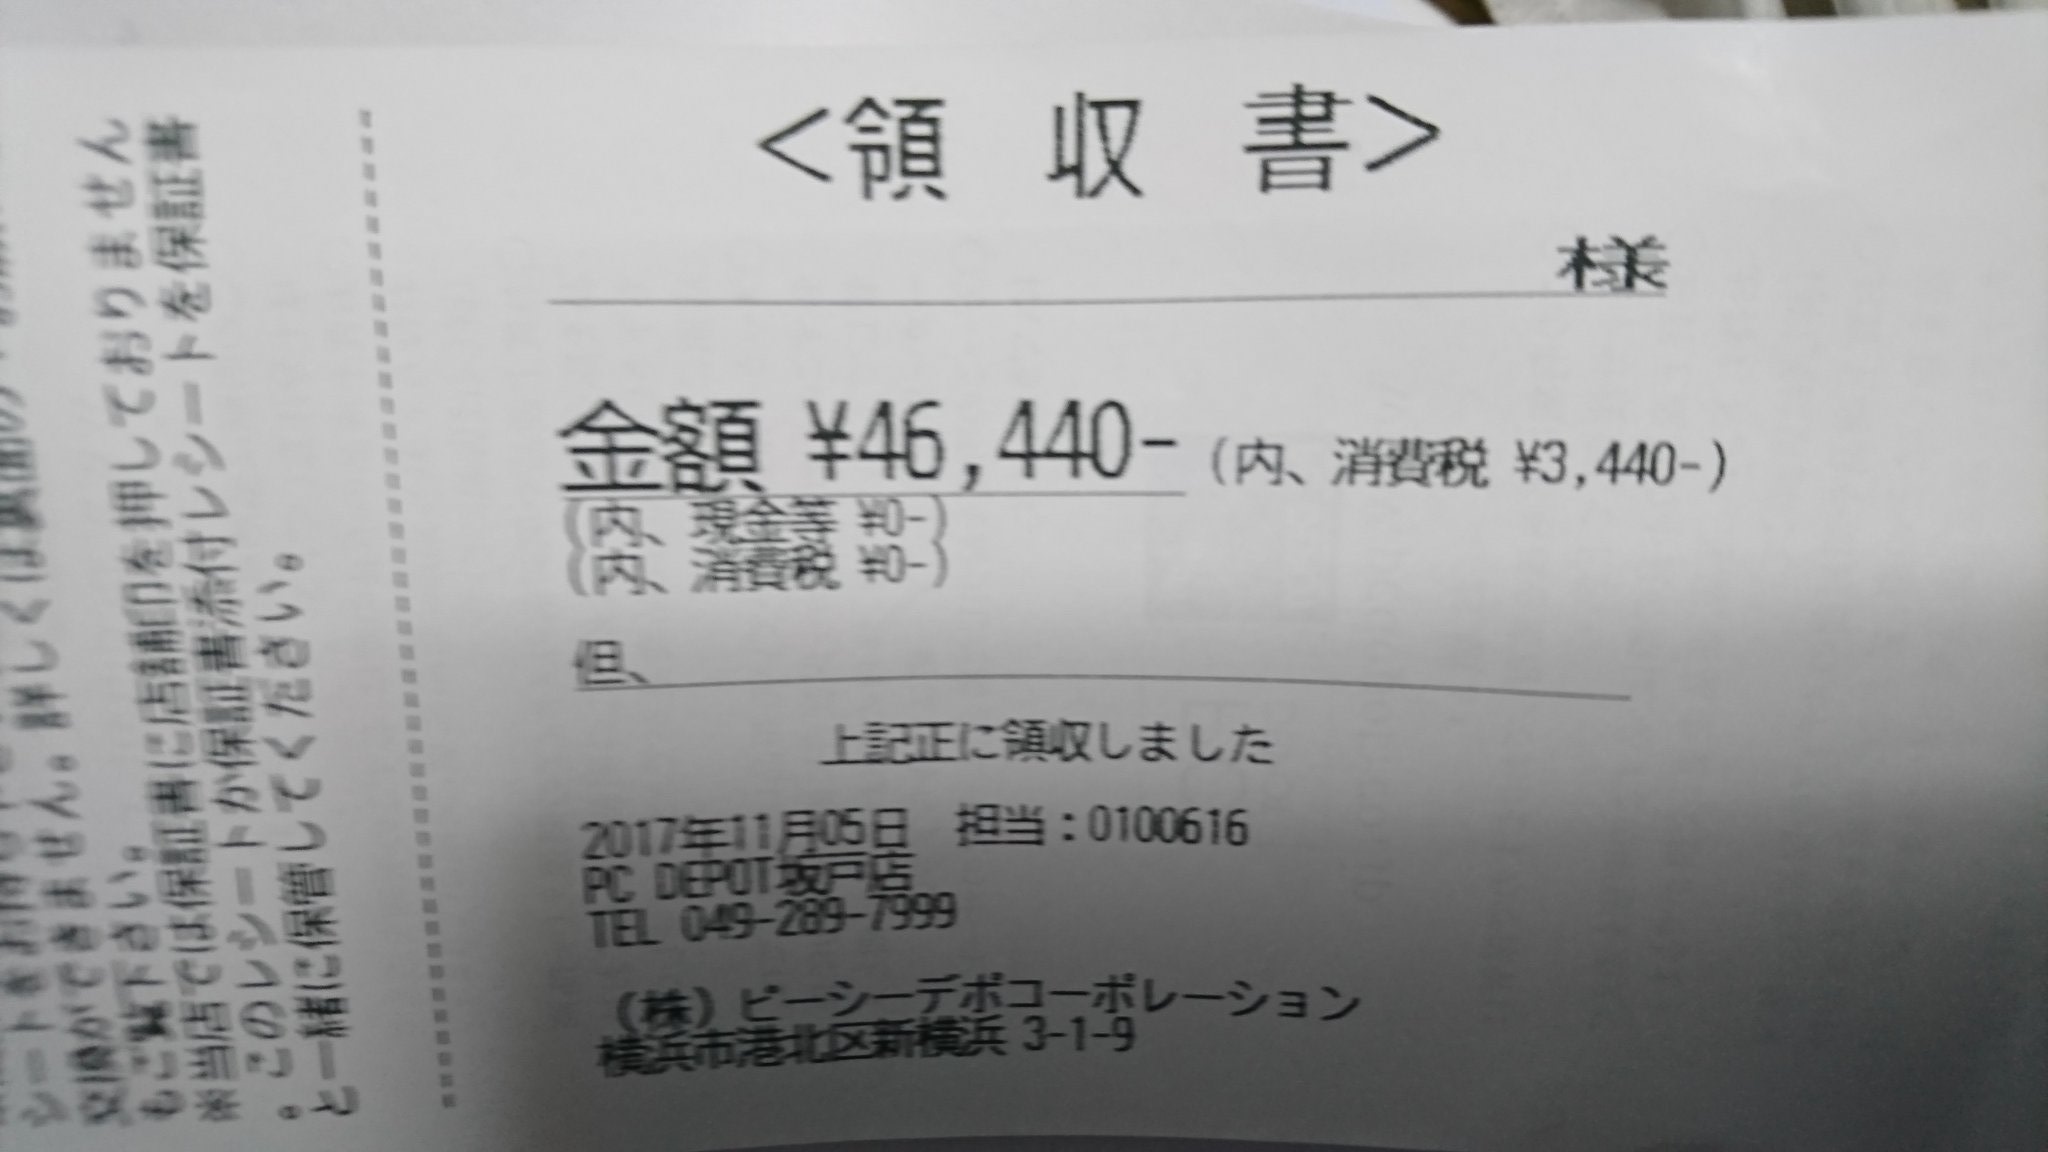 ¥46,440の領収書